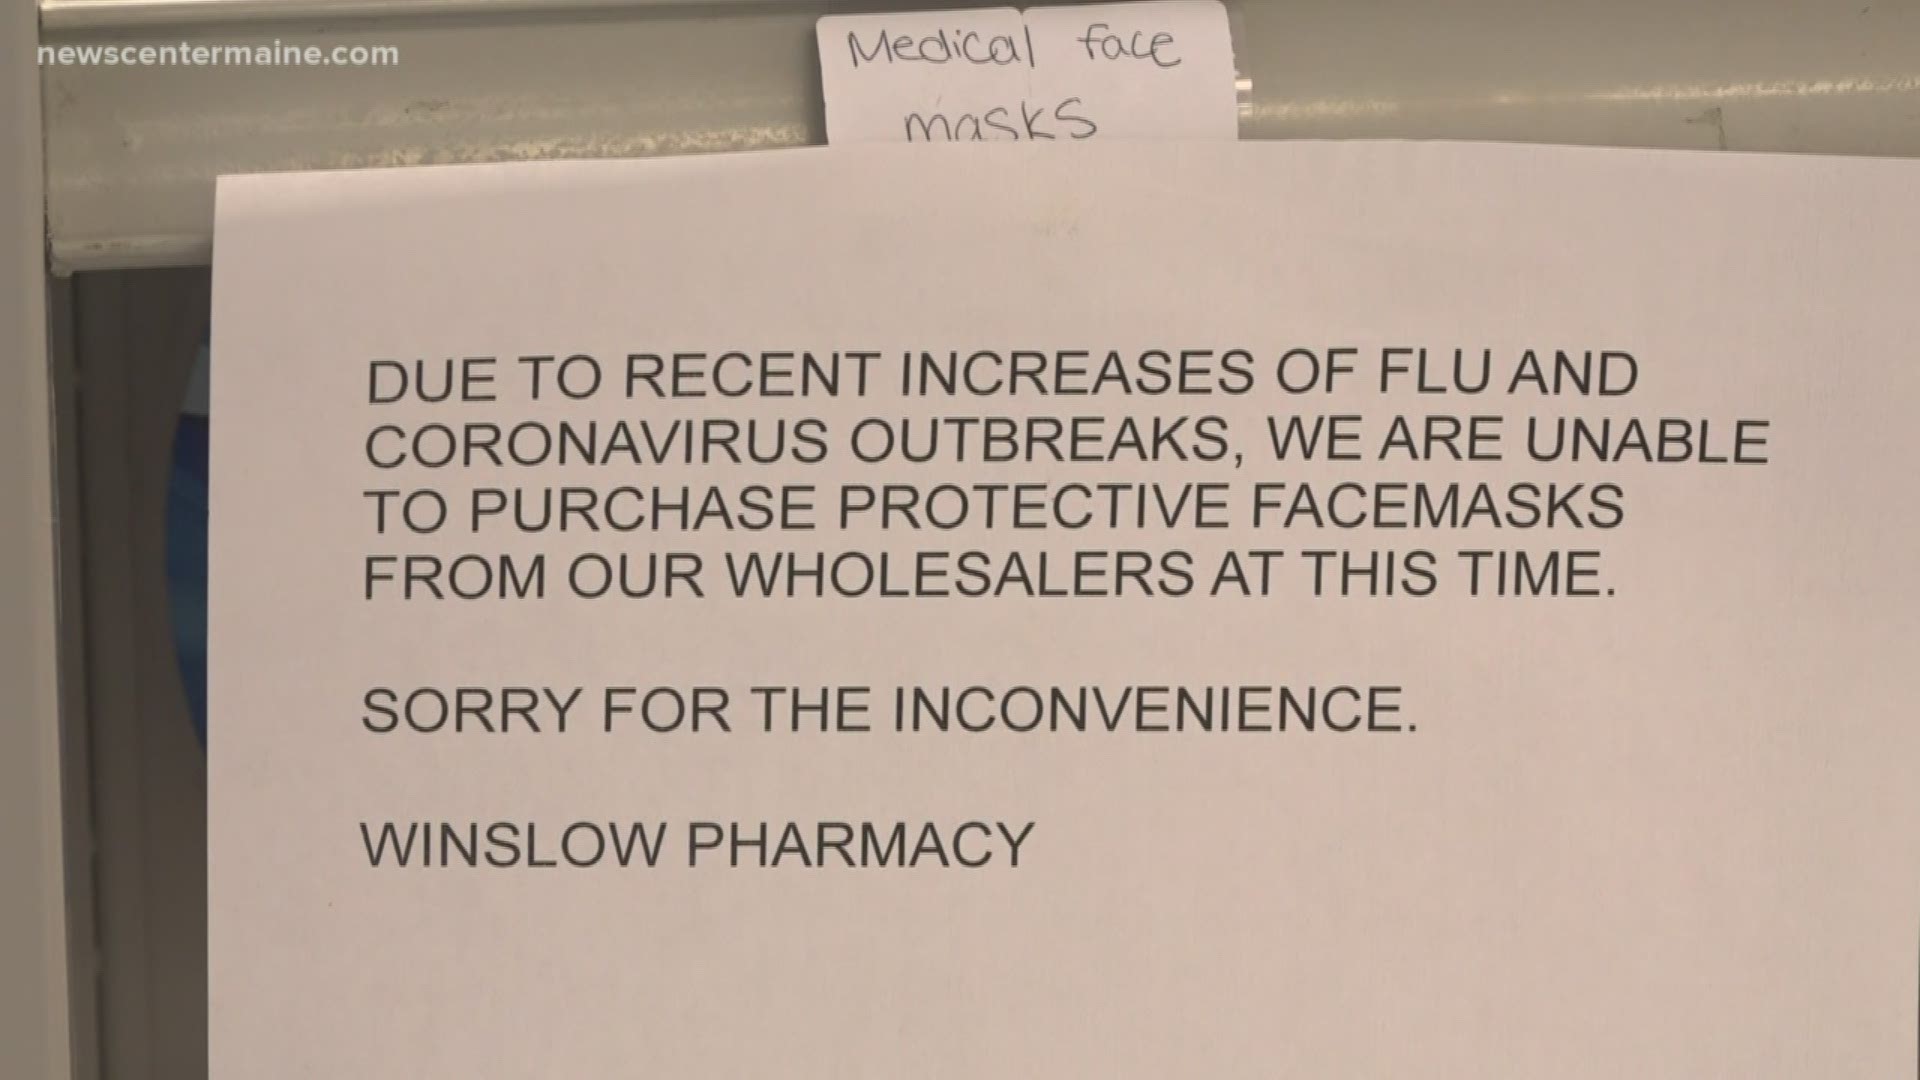 Shortage of medical face masks at pharmacies